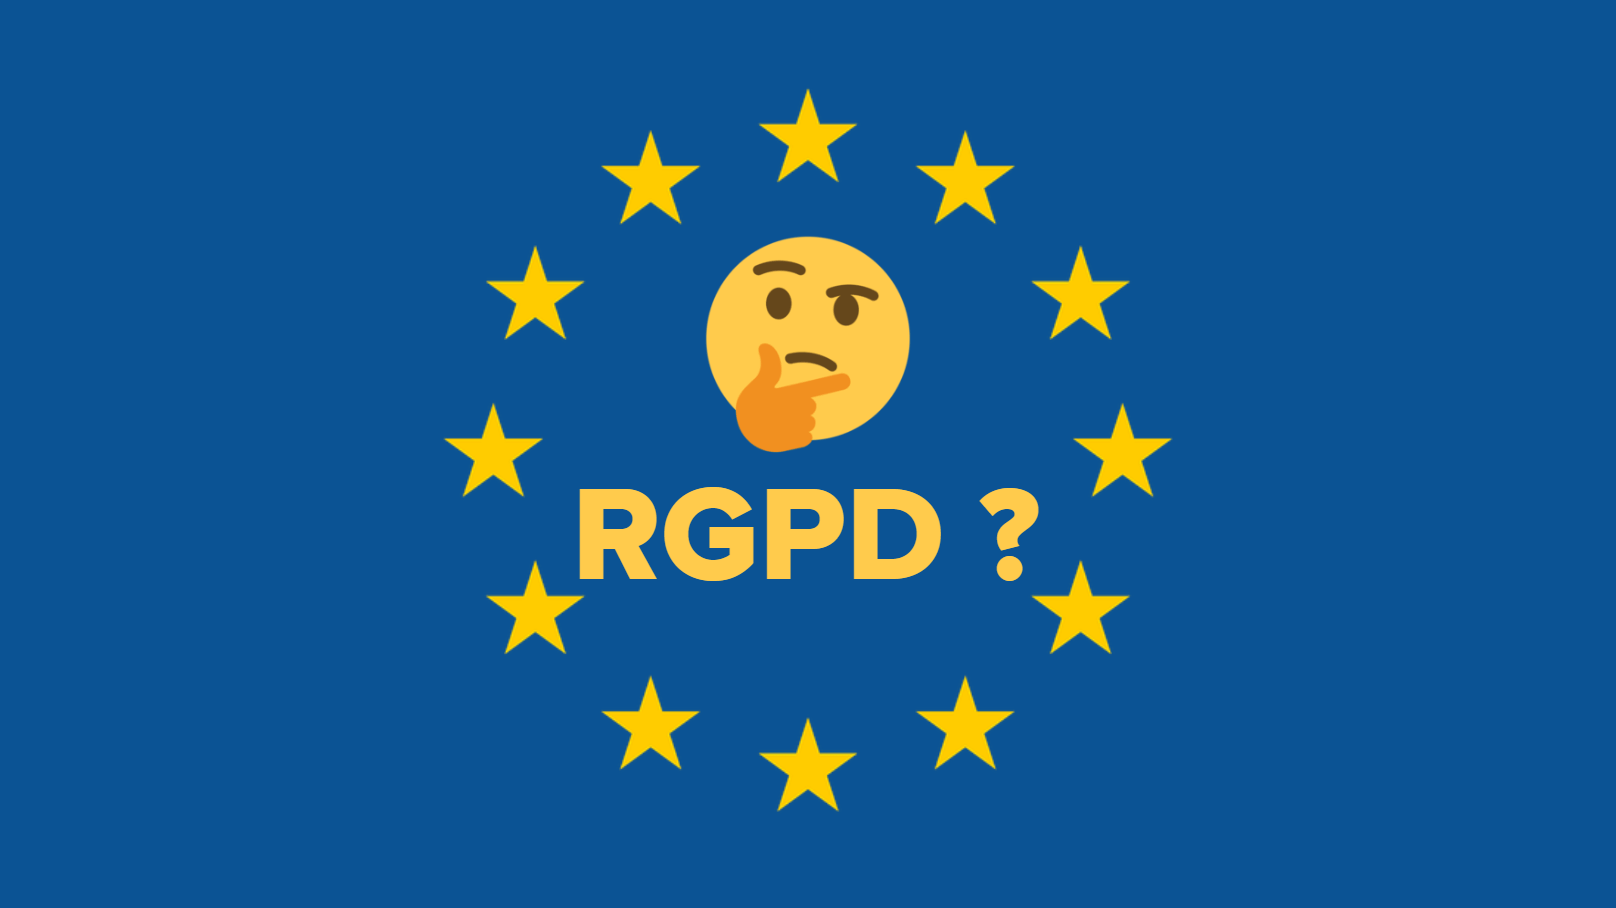 visuel du drapeau européen avec en son centre un smiley interrogatif et le mot RGPD avec un point d'interrogation